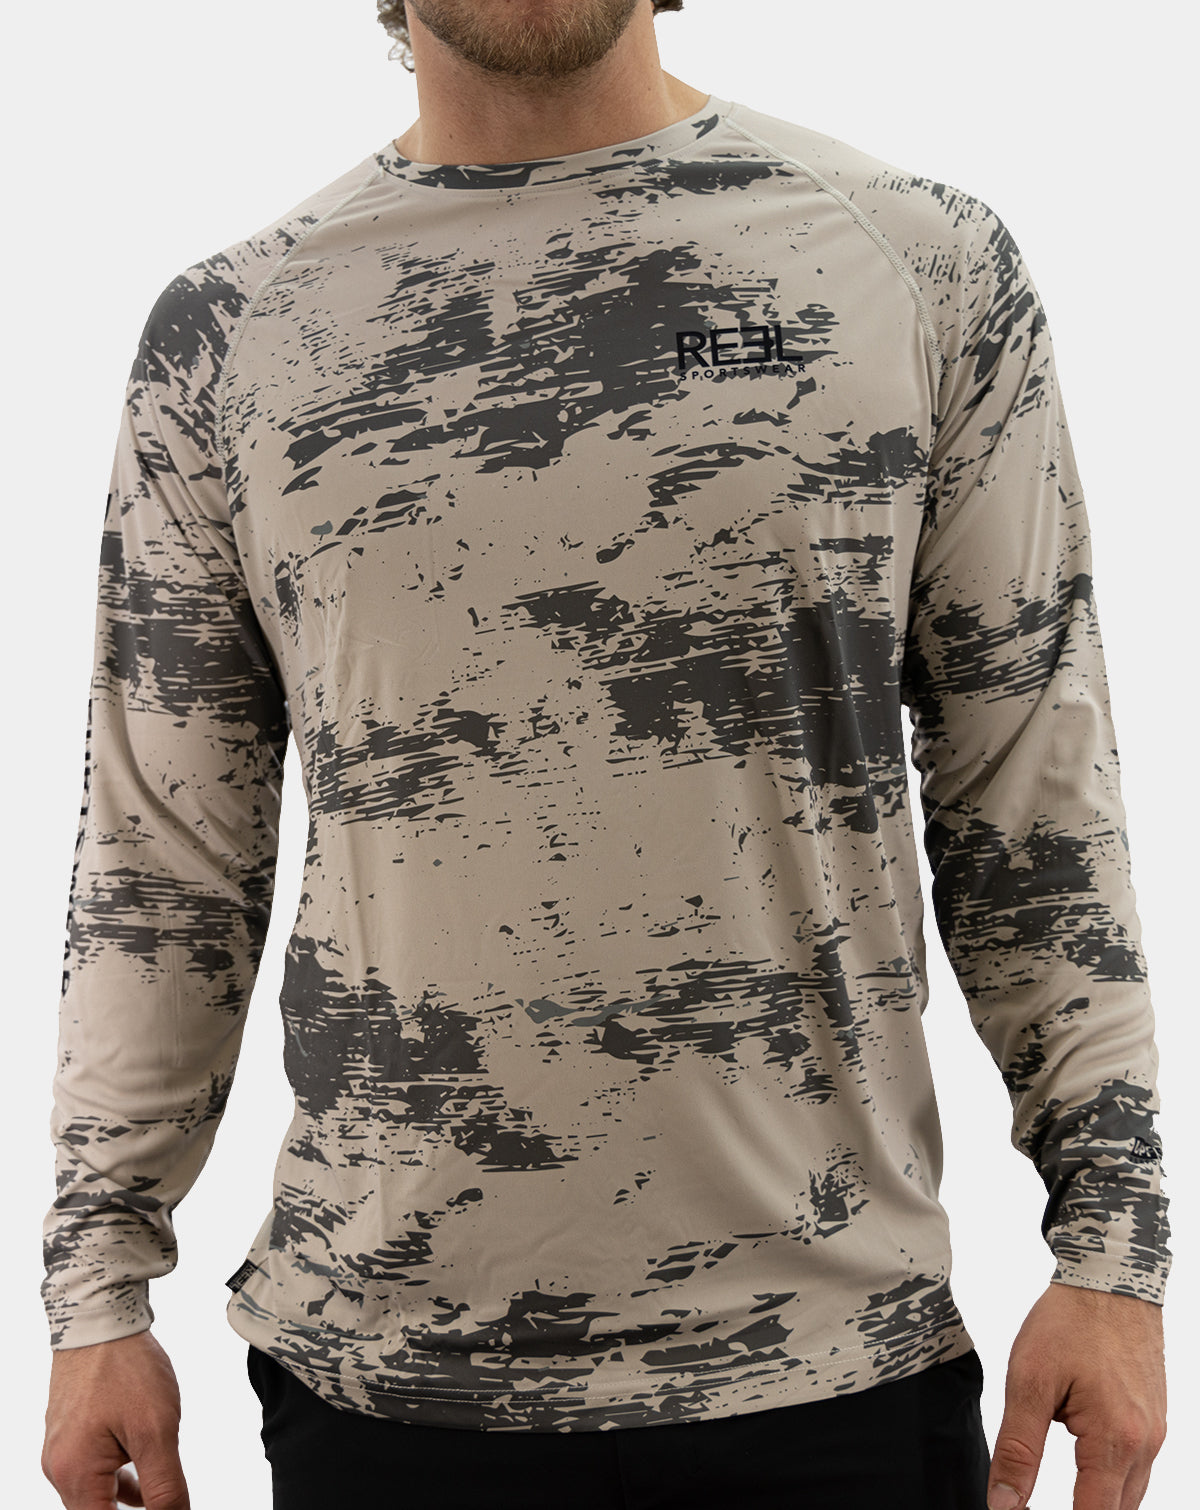 Fishing Shirts - Men's - Long Sleeve Fishing Shirt - FH Outfitters